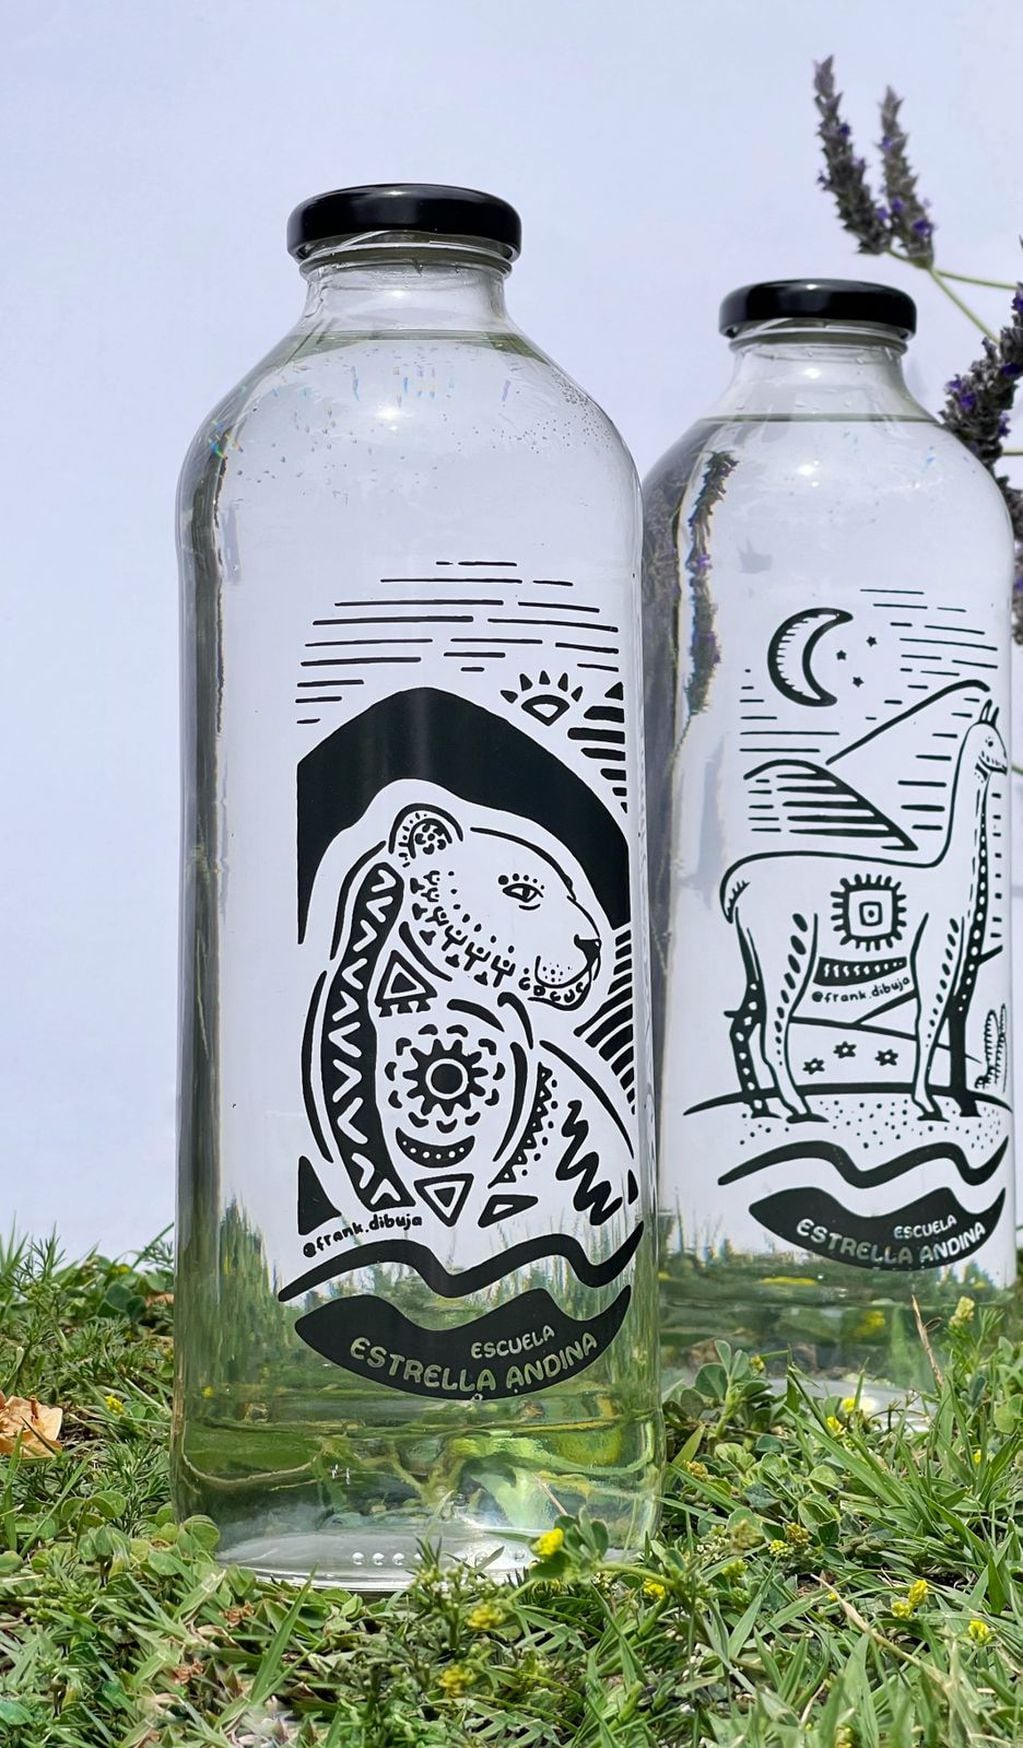 Original y creativa campaña: venden botellas con motivos artísticos para poder ampliar su escuela en Luján de Cuyo. Foto: Gentileza Escuela Estrella Andina